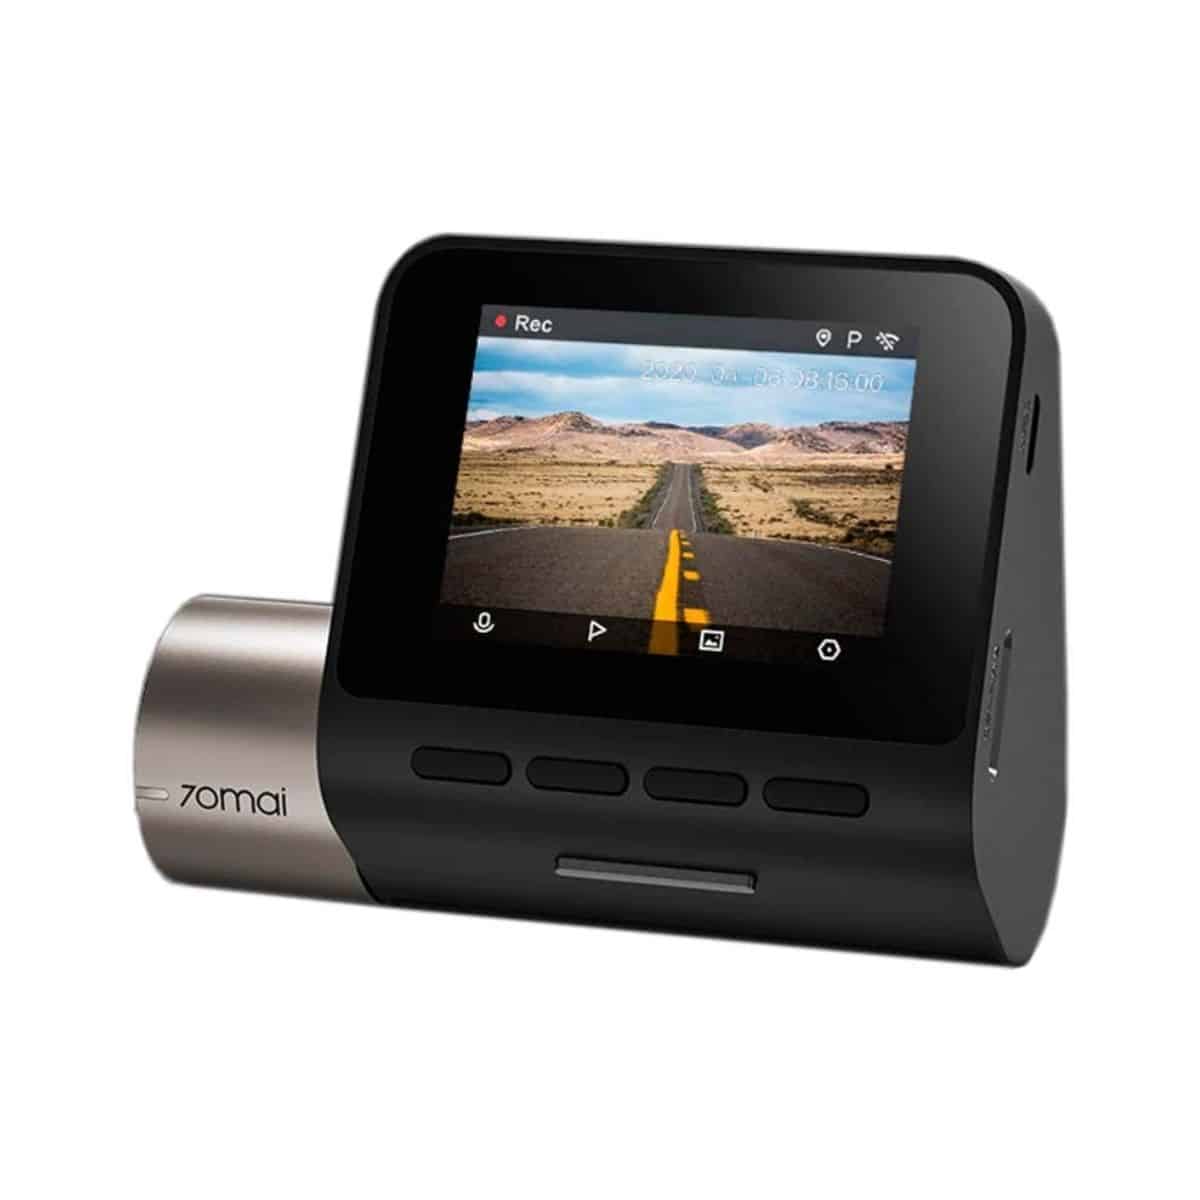 Cámara de seguridad para auto - Dash Cam Pro